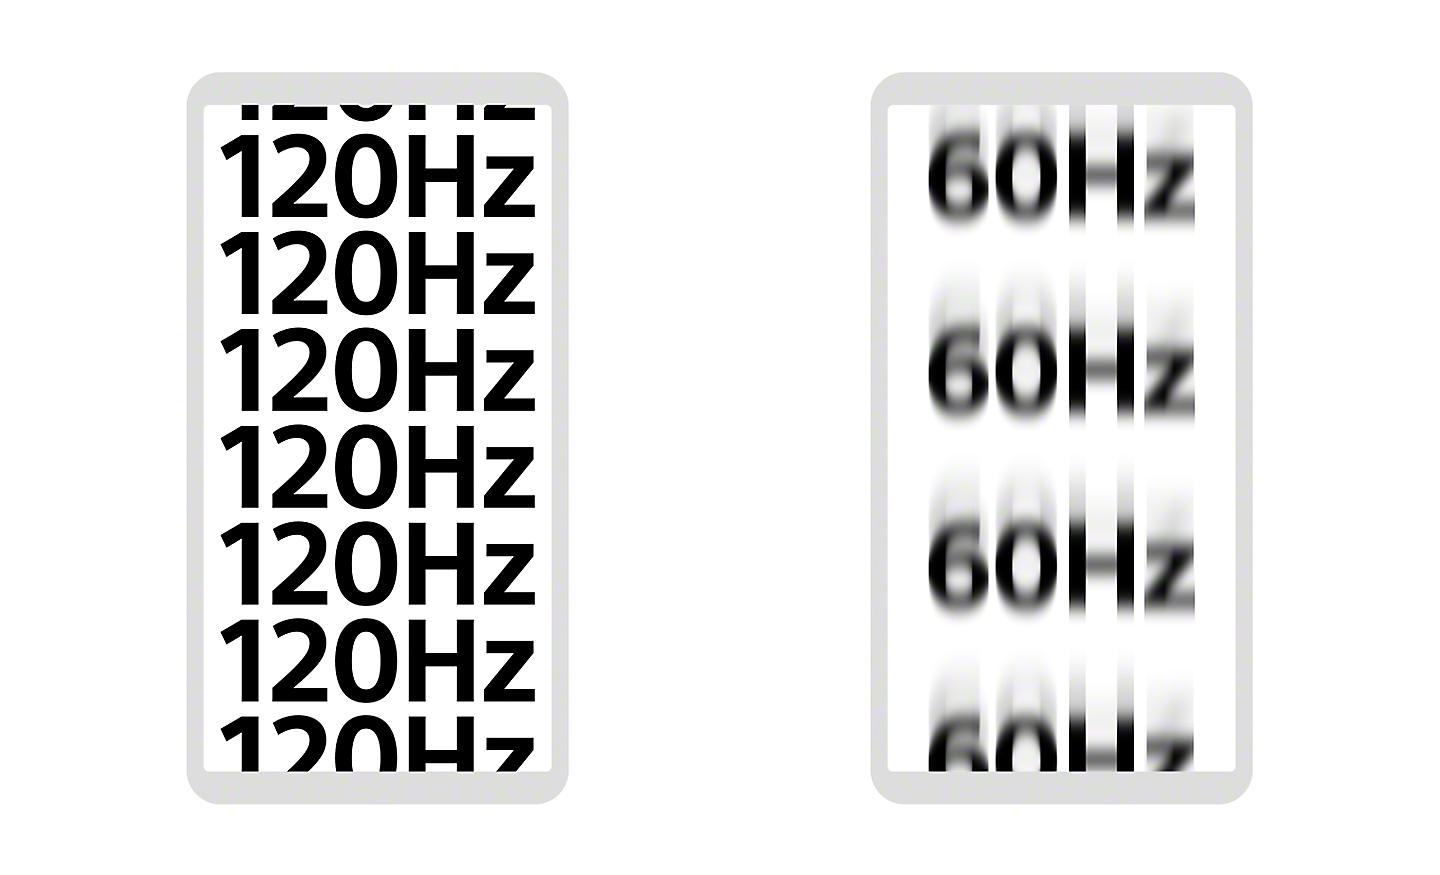 Bild av två smartphones – en med "120Hz" flera gånger i skarpt definierad text, den andra med ”60 Hz” i suddig text